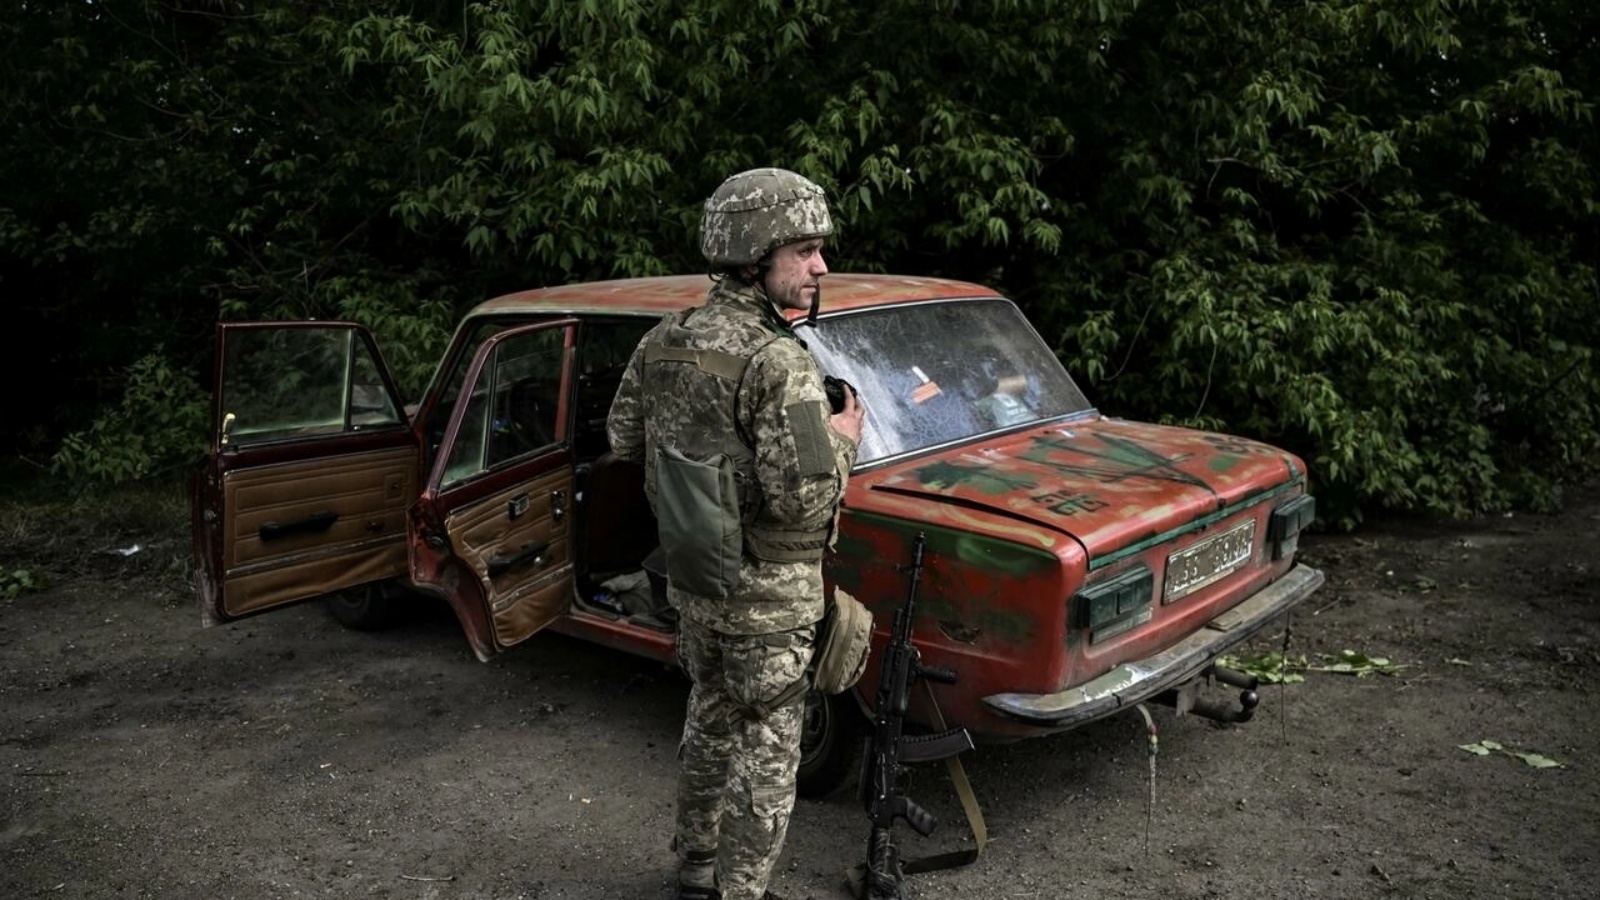 جندي أوكراني يستعد مع آخرين للتوجه إلى الجبهة عند نقطة تفتيش في ليسيتشانسك بإقليم دونباس شرق أوكرانيا، في 23 مايو 2022 مع مواصلة الغزو الروسي لأوكرانيا 